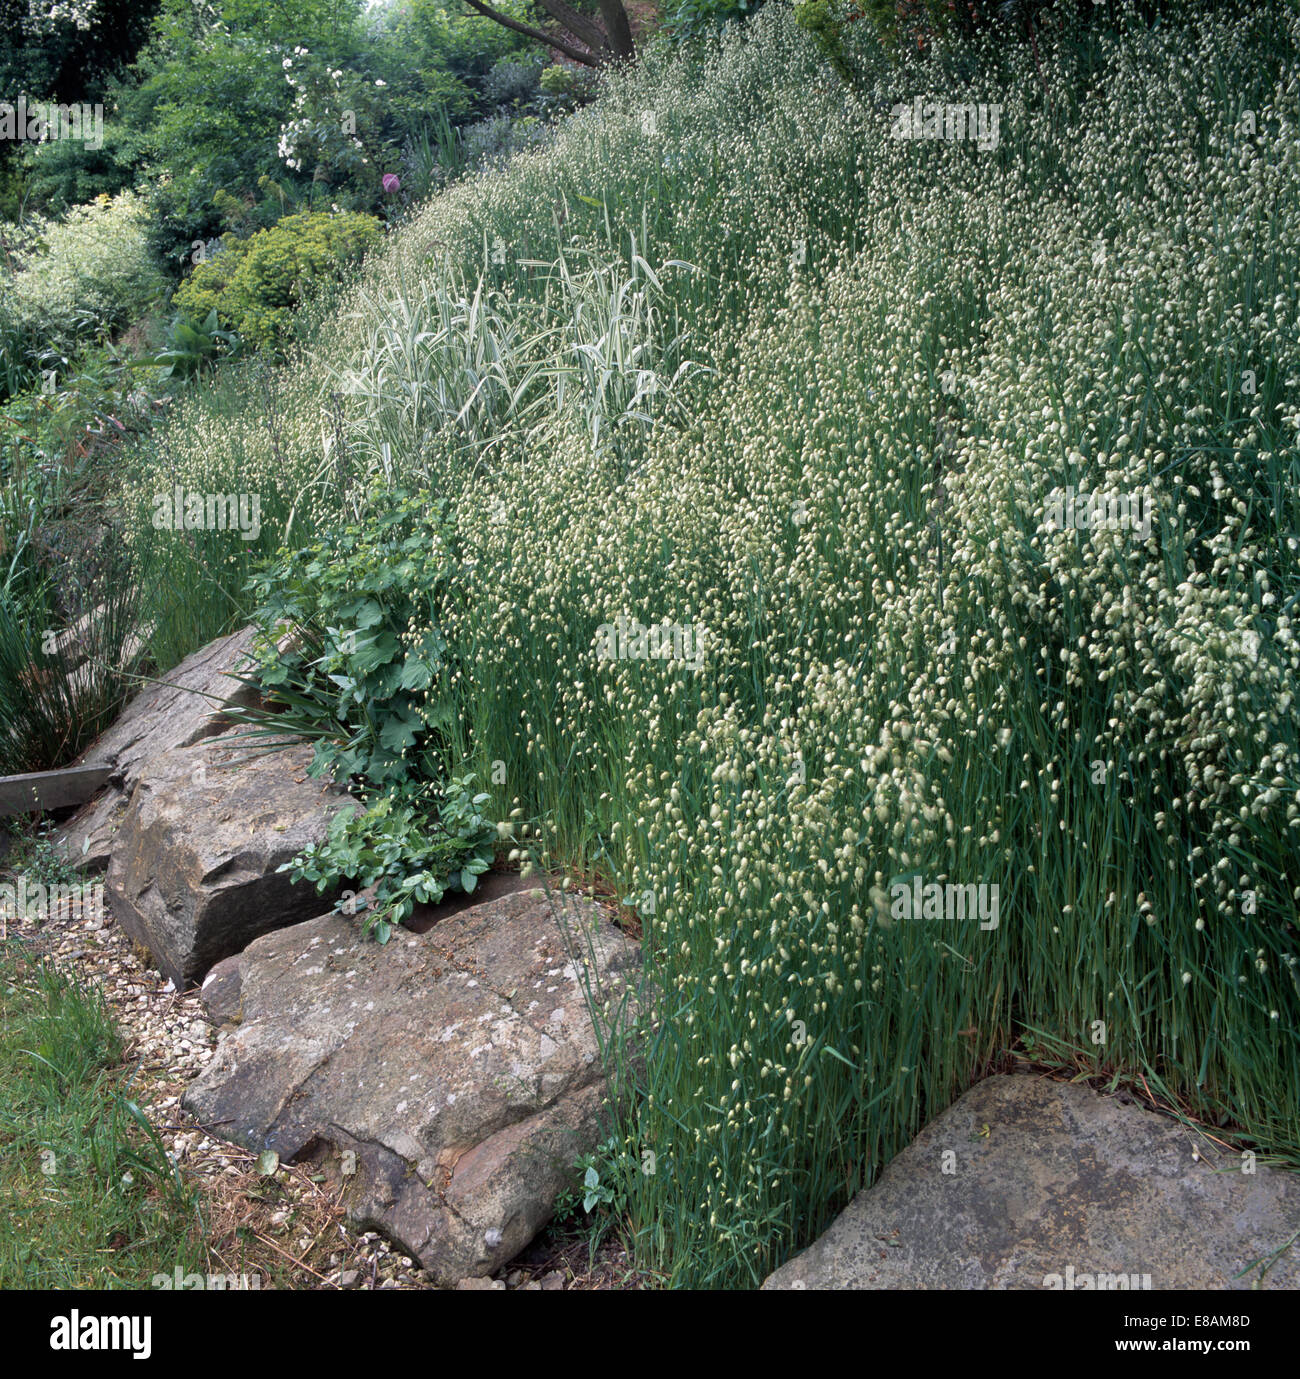 Close-up of quaking grass beside rocks edging hillside garden Stock Photo